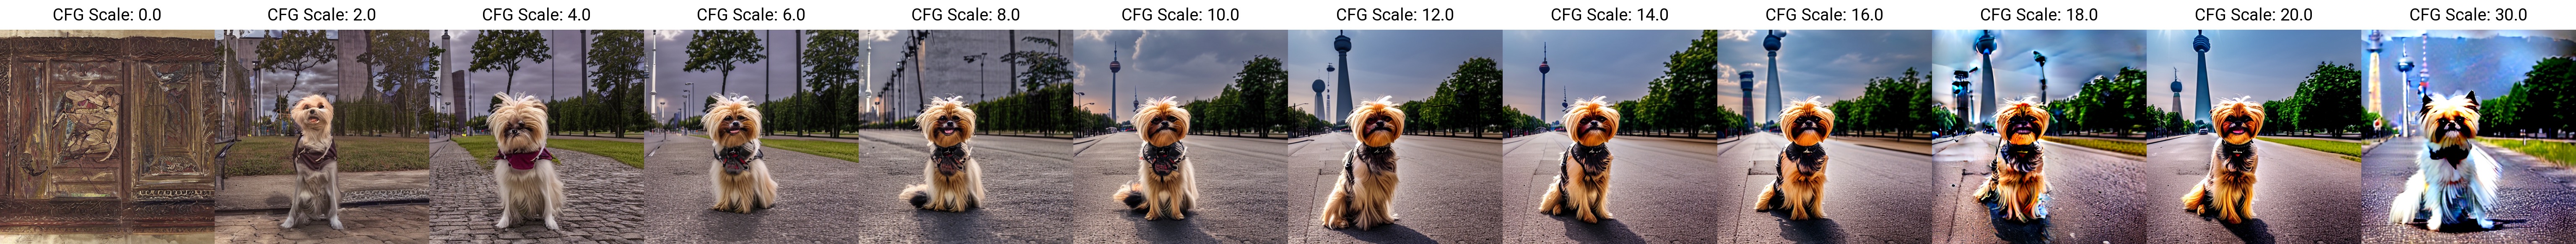 Bildserie, die zeigt, wie sich der Bildinhalt mit dem CFG Scale Wert verändert (Stabile Diffusion 1.5)